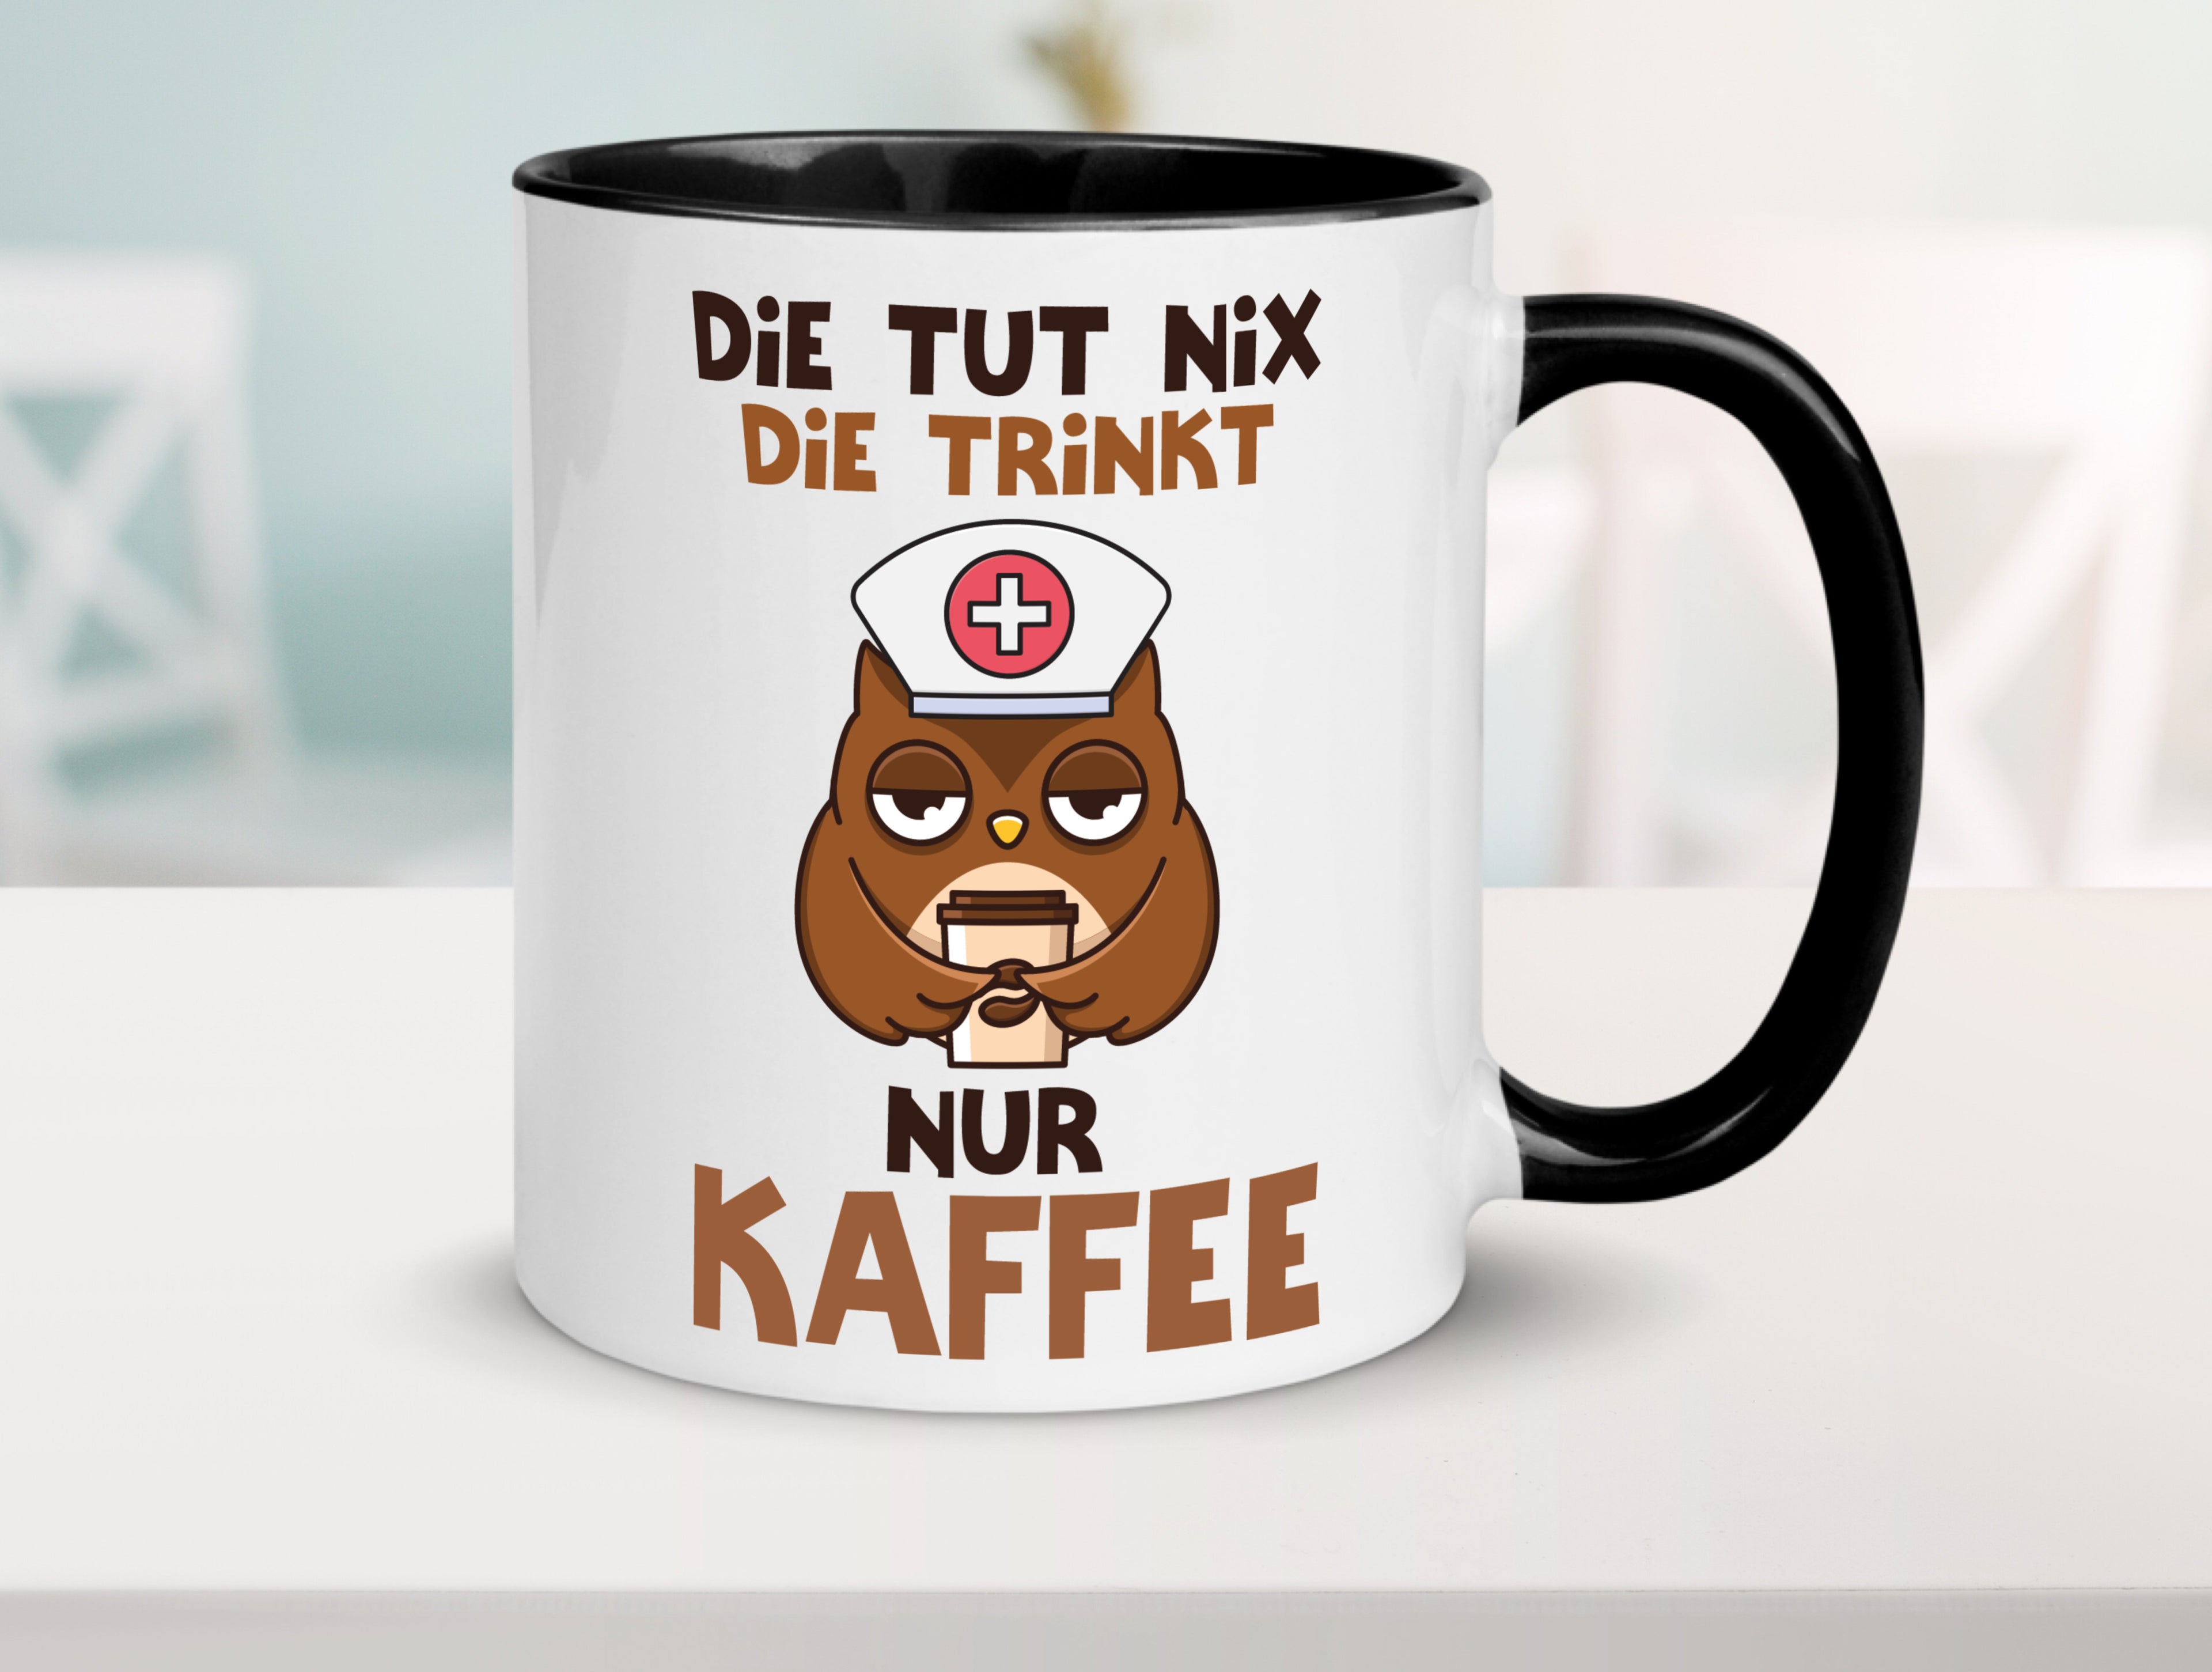 Die tut nix! | Spruch | Kaffee | Krankenschwester Tasse Weiß - Schwarz - Kaffeetasse / Geschenk / Familie